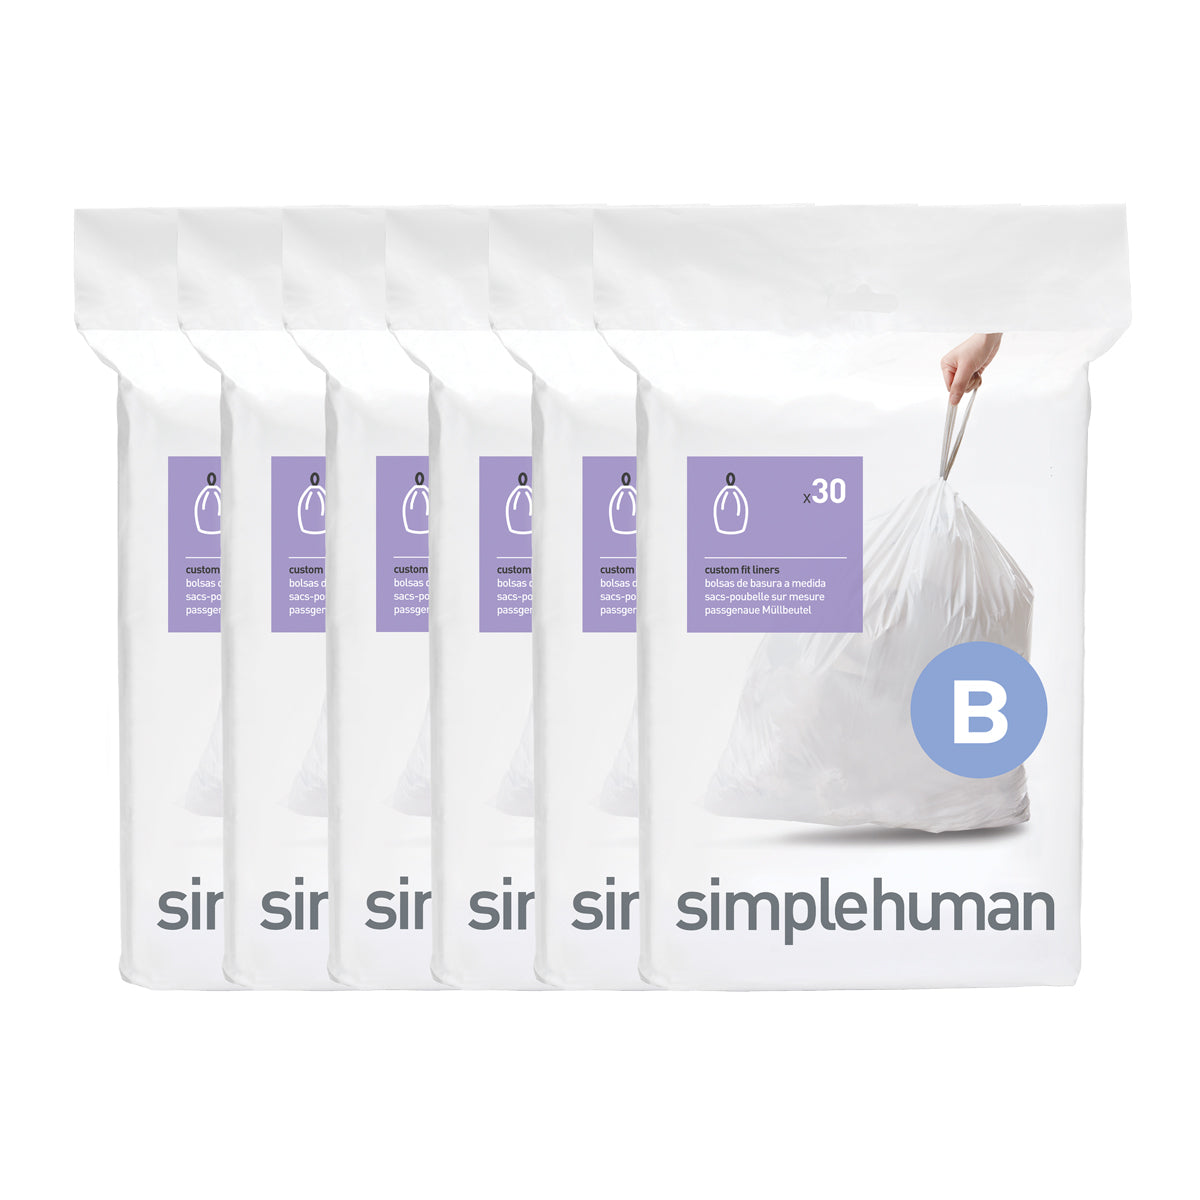  simplehuman Code B Custom Fit Drawstring Trash Bags in